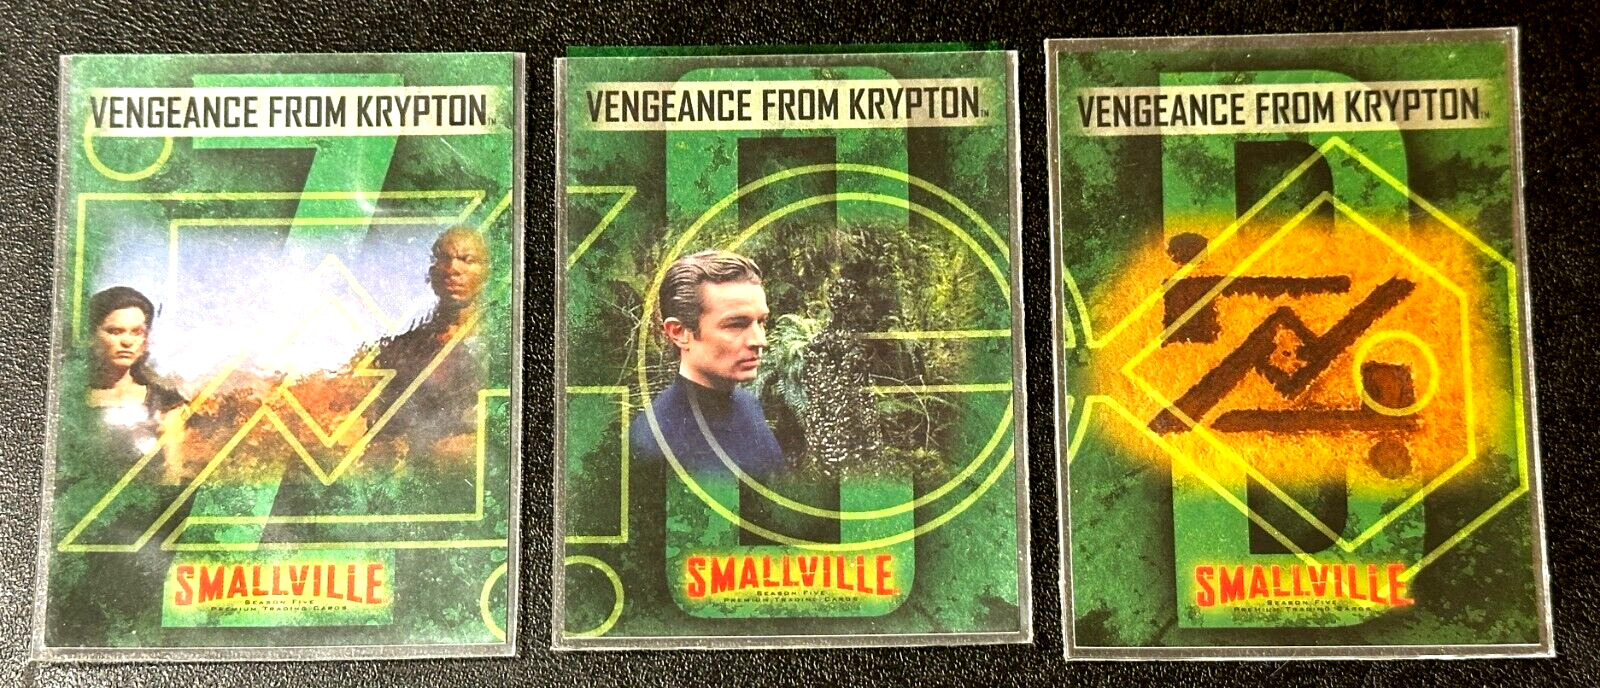 2006-07 Smallville Season 5 Vengeance from Krypton Card Set BL1-BL3 Inkworks